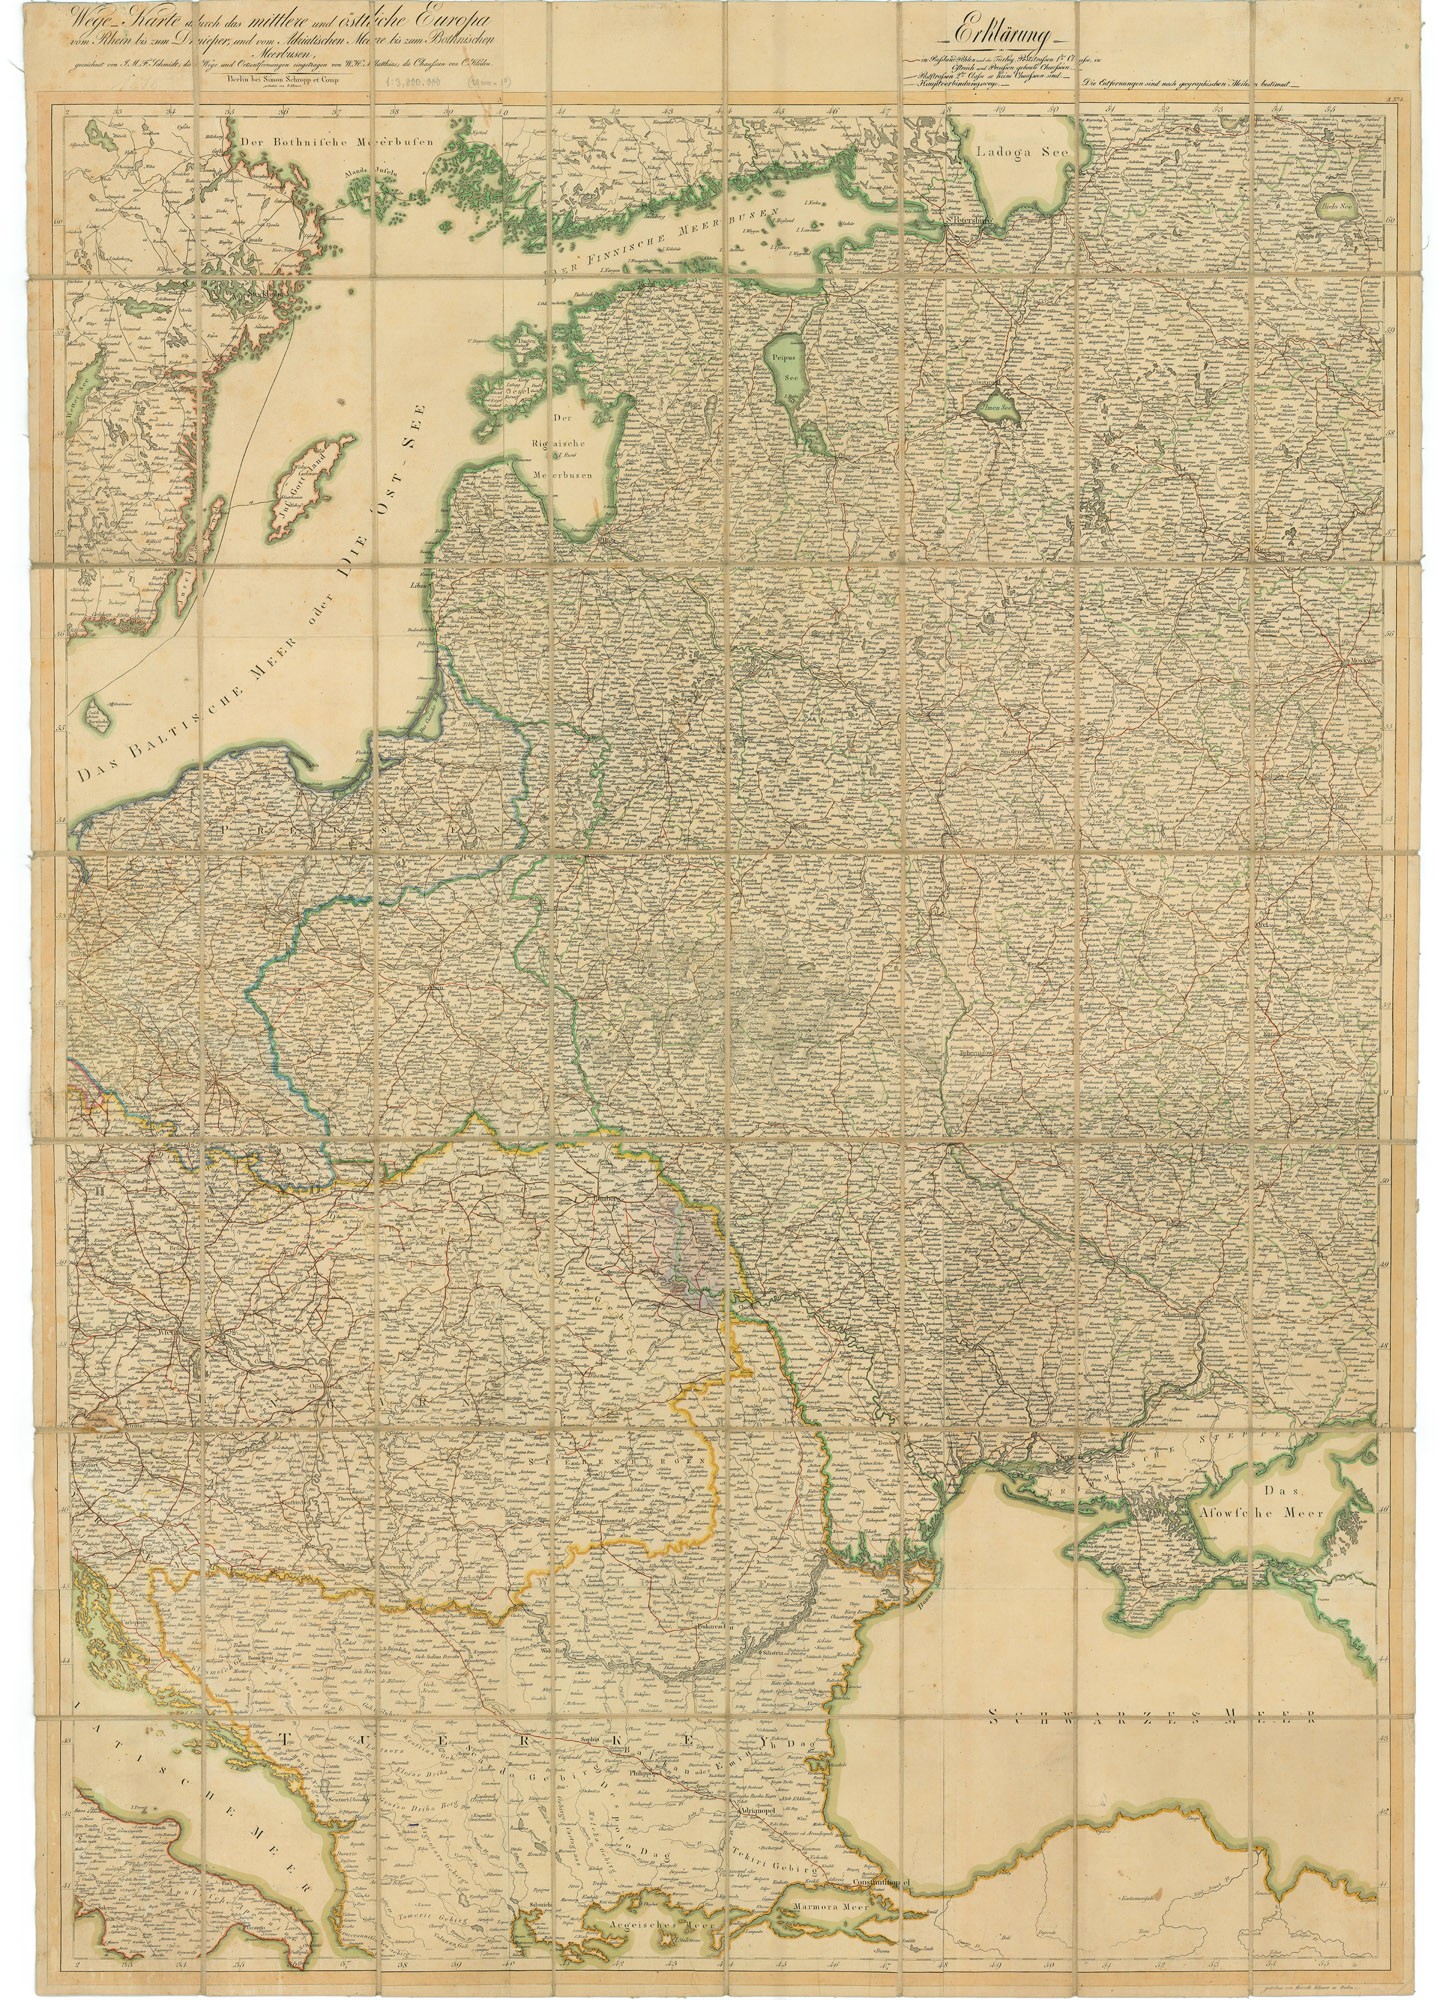 Közép- és Kelet-Európán át vezető utak térképe  a Rajnától a Dnyeperig és az Adriai-tengertől a Botteni-öbölig – Wege-Karte durch das mittlere und östliche Euro (Postamúzeum CC BY-NC-SA)